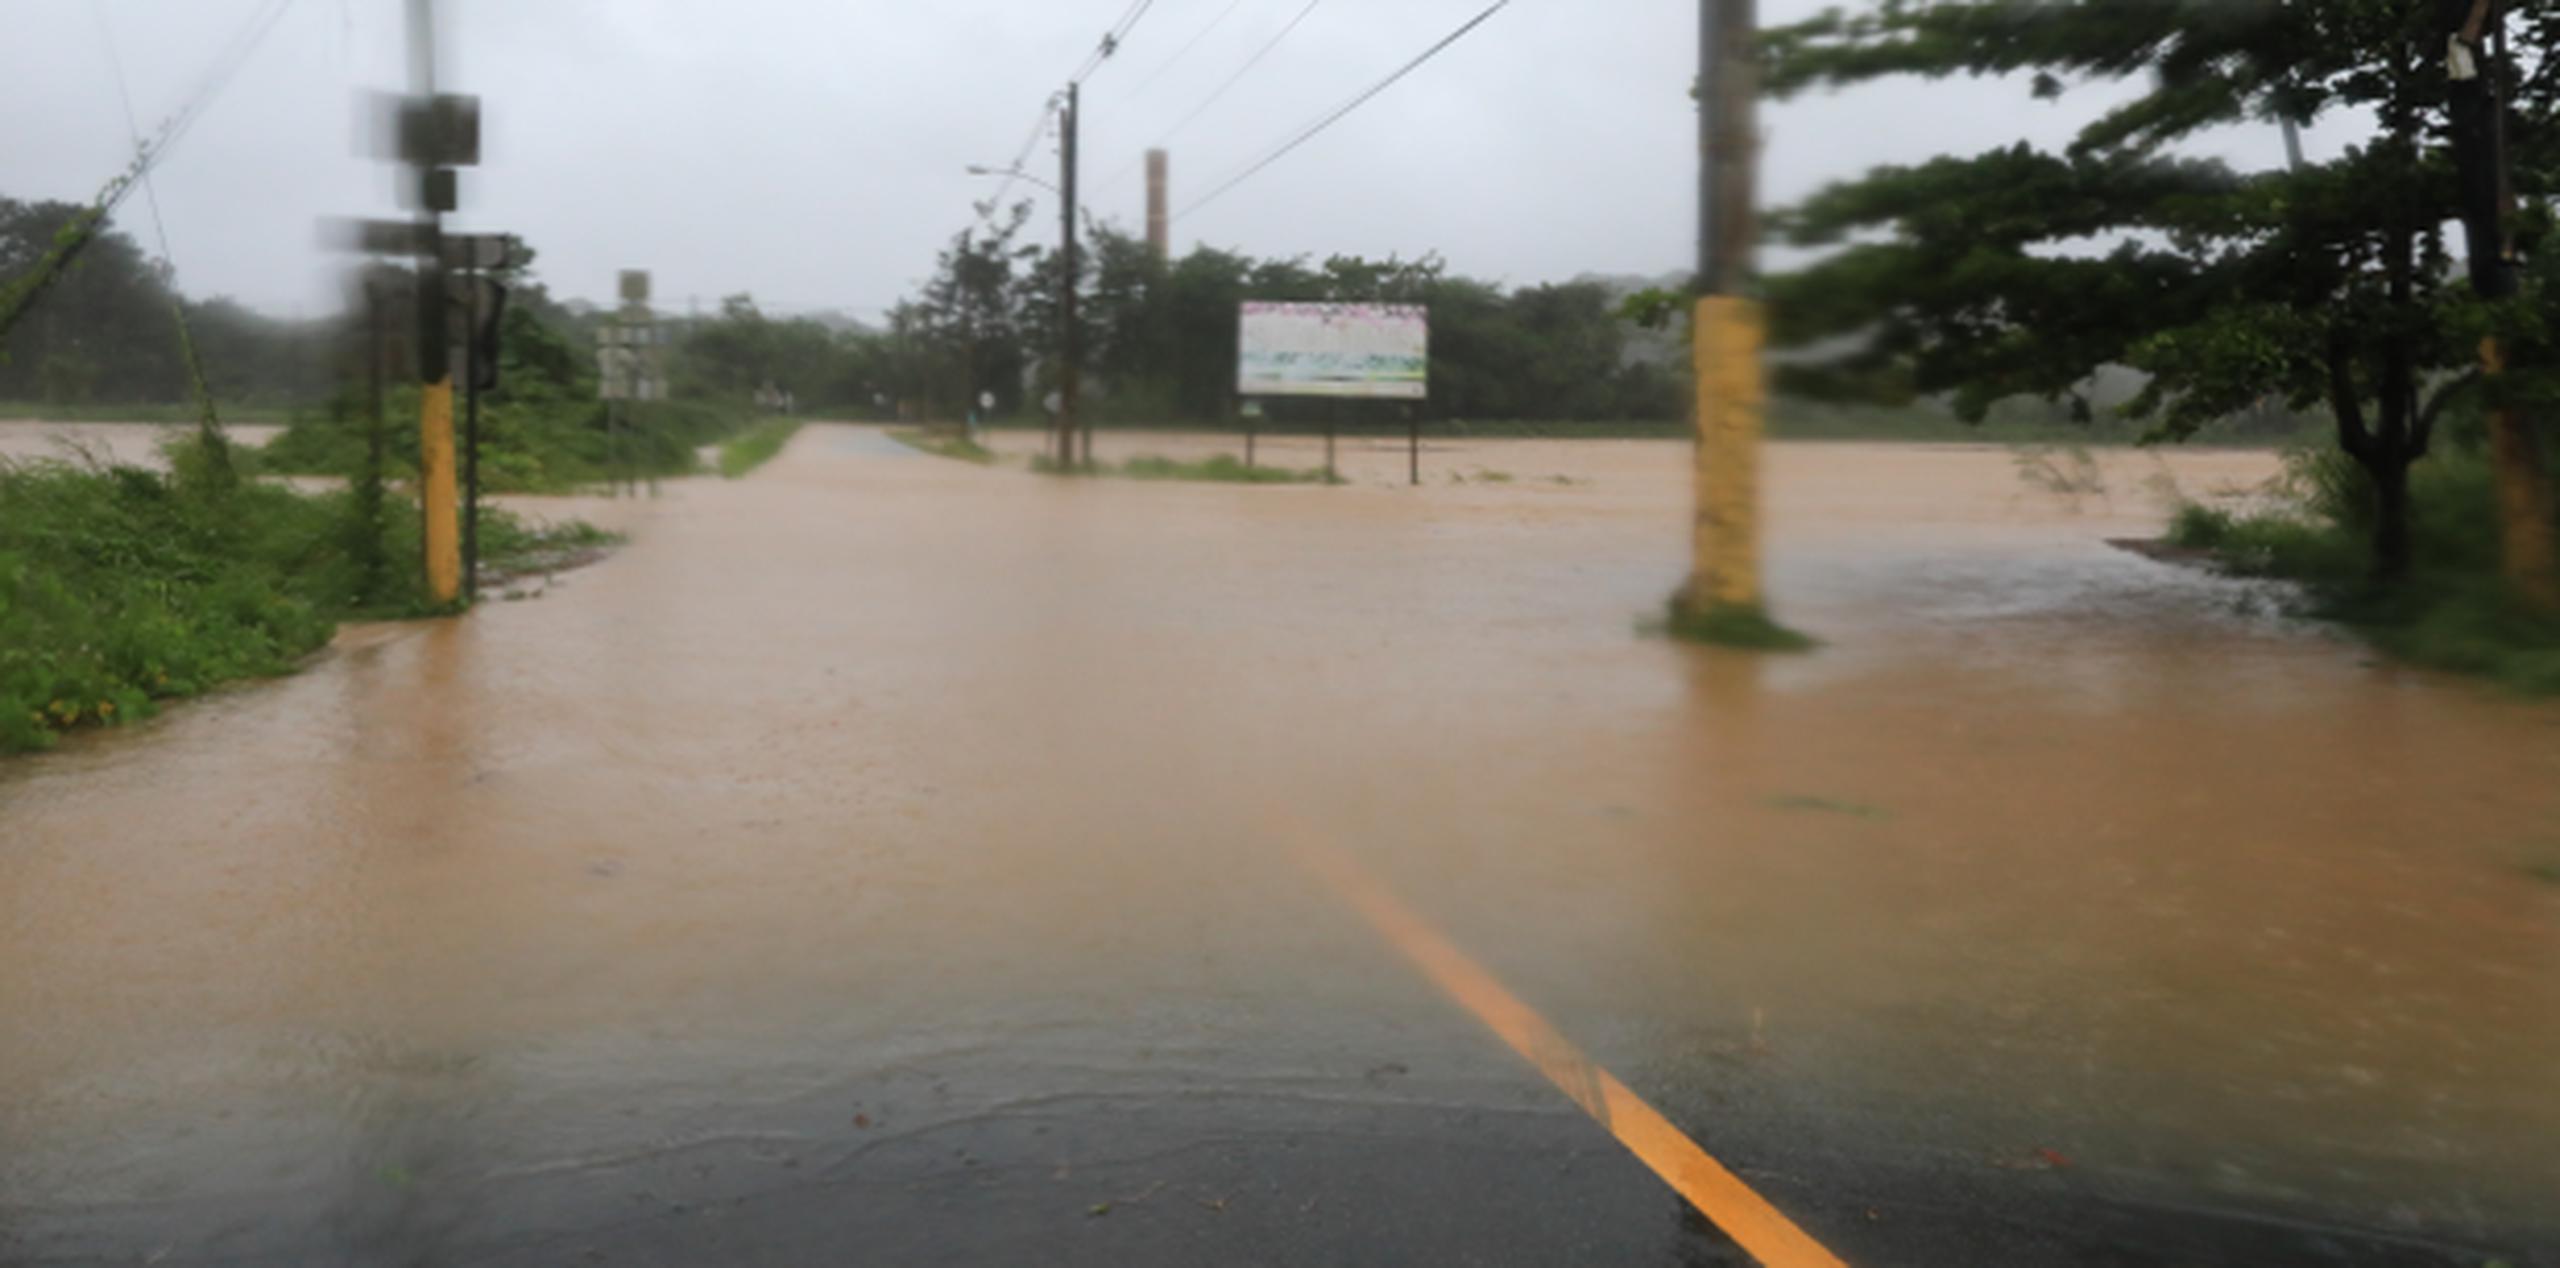 Segmento de la carretera PR-676 inundada. (xavier.araujo@gfrmedia.com)